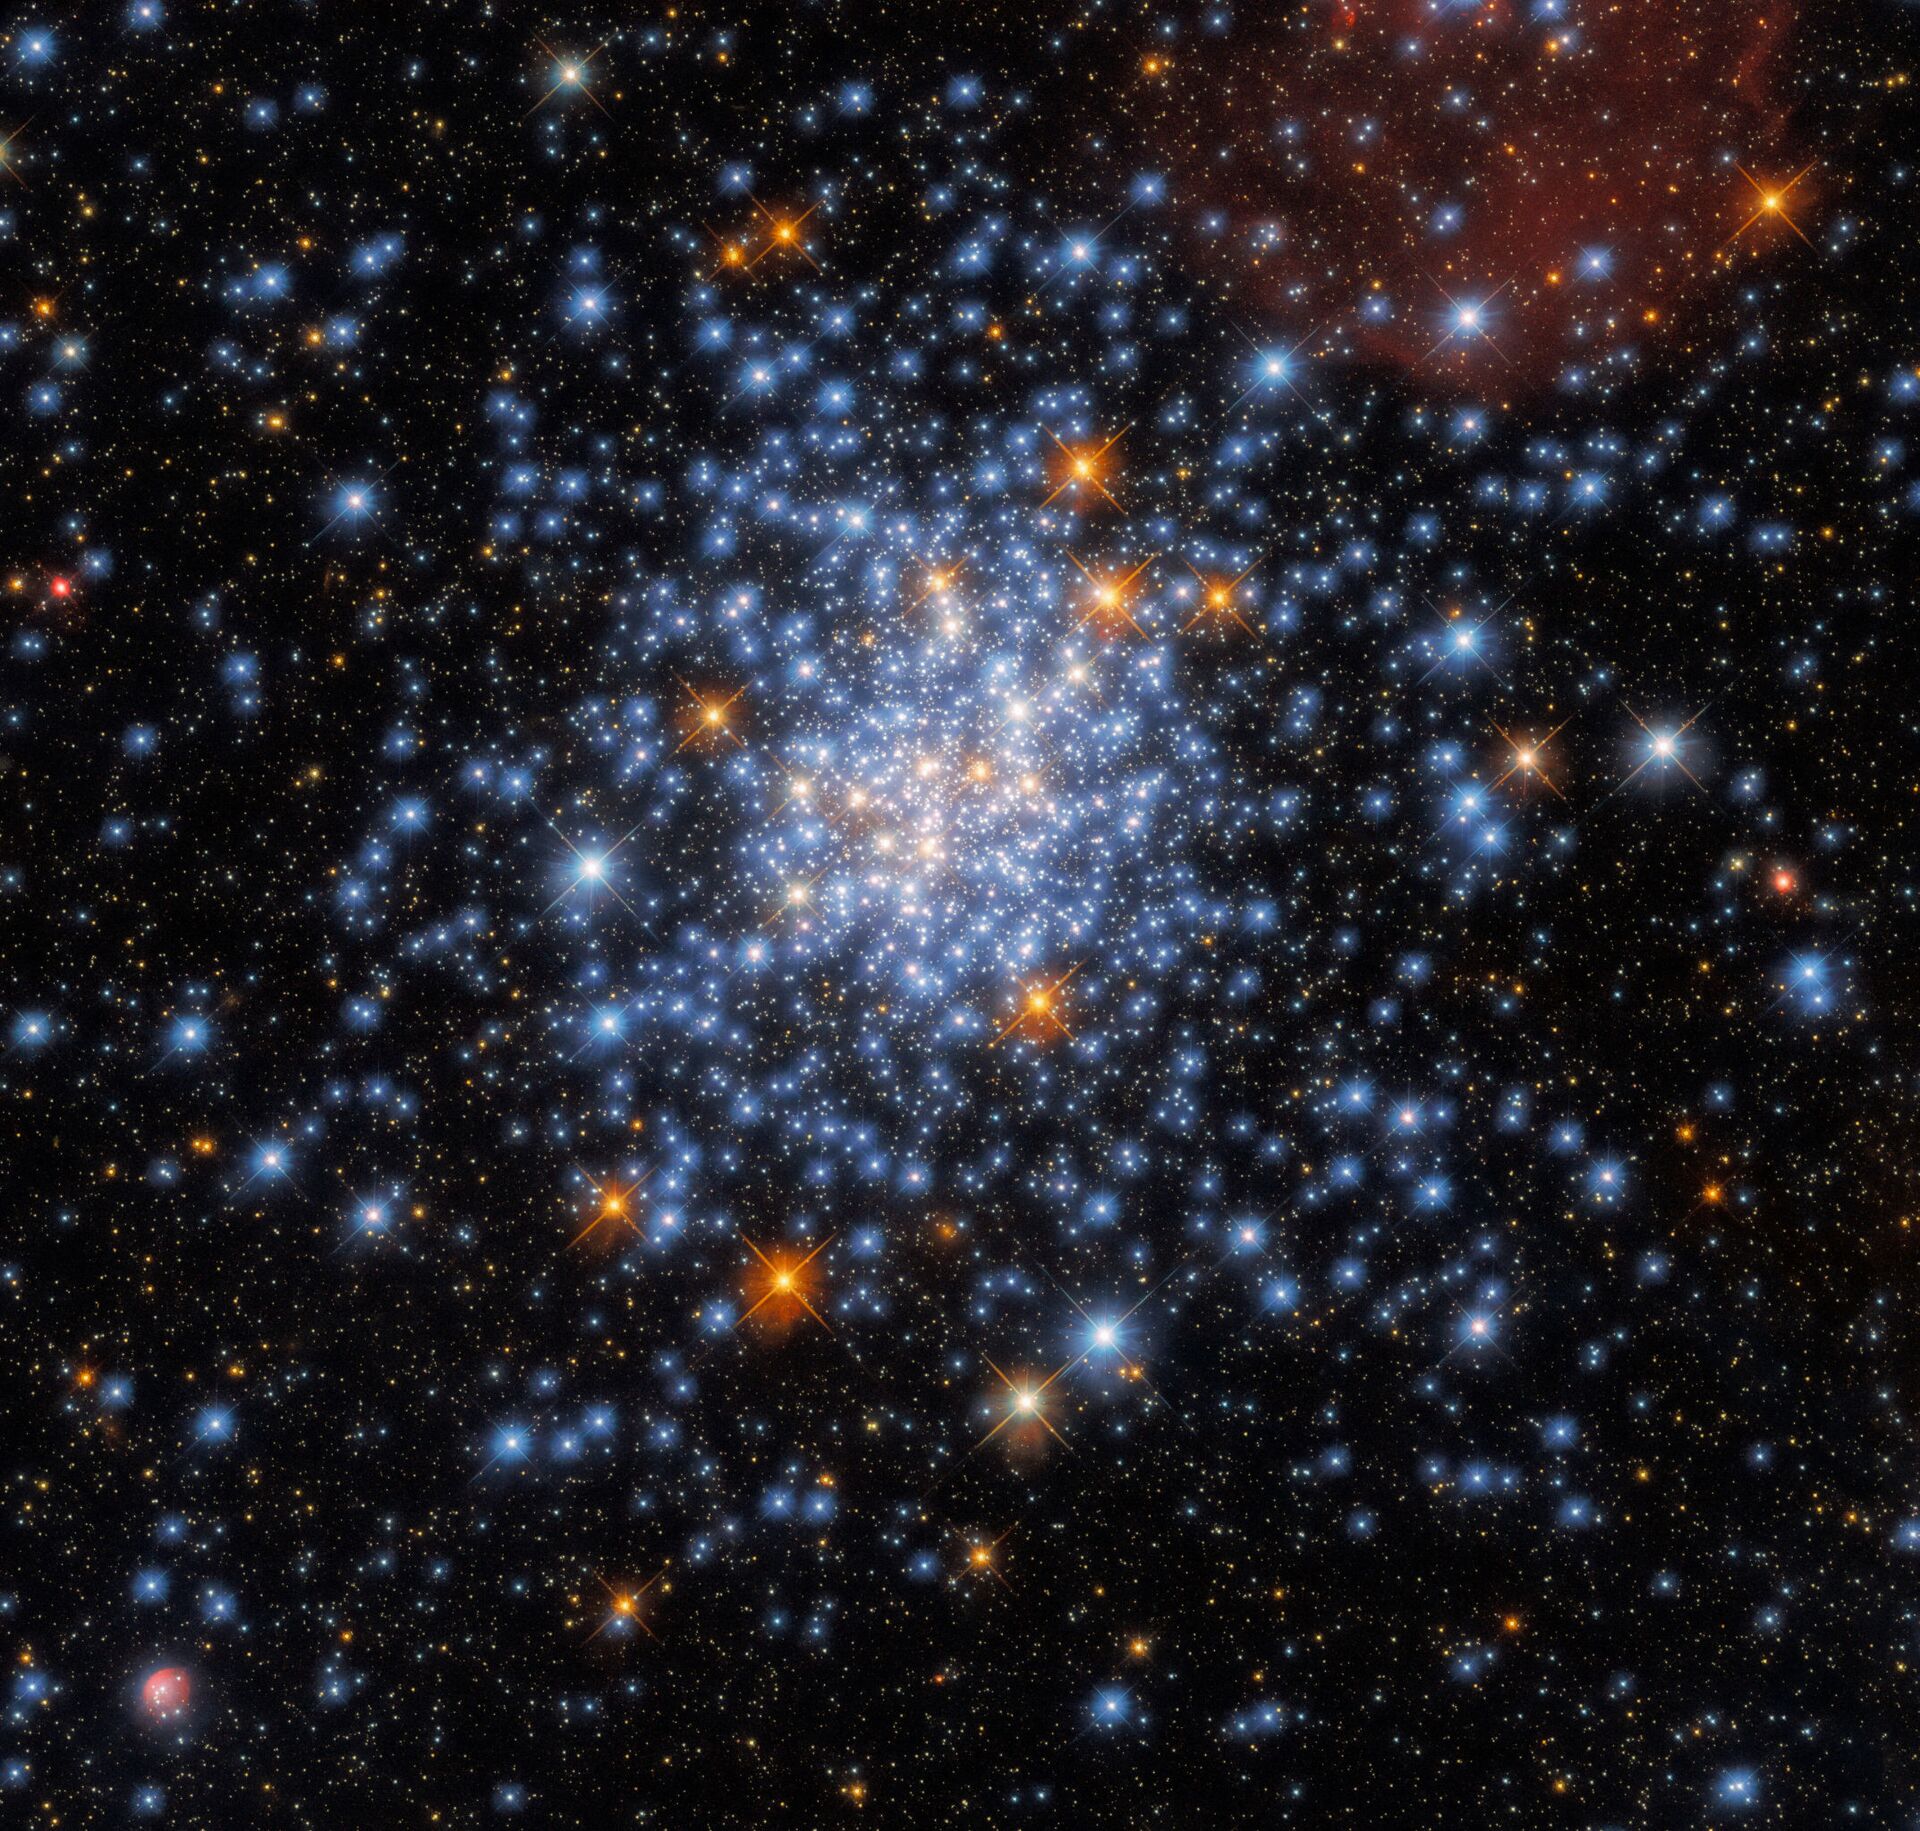 Aglomerado de estrelas formado por única nuvem de gás e poeira é captado pelo Hubble (FOTO) - Sputnik Brasil, 1920, 06.07.2021